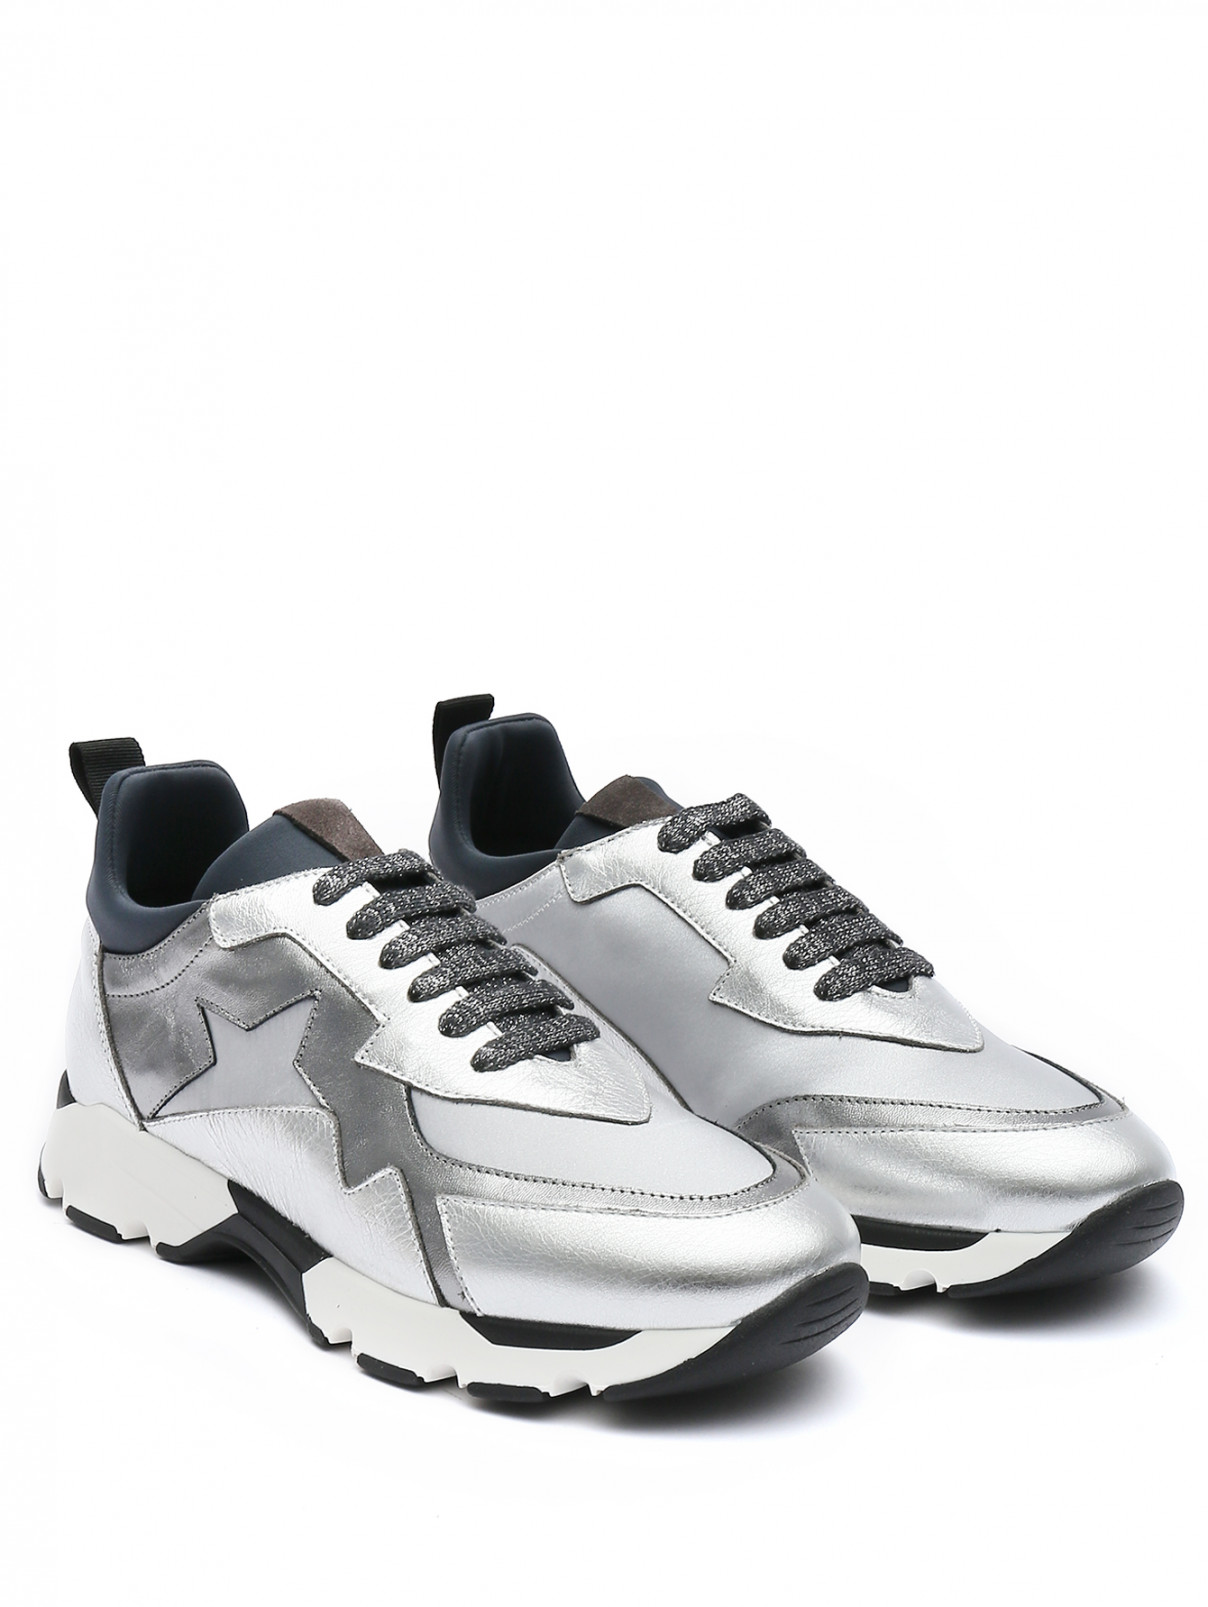 Комбинированные кроссовки на шнурках Lorena Antoniazzi  –  Общий вид  – Цвет:  Серый